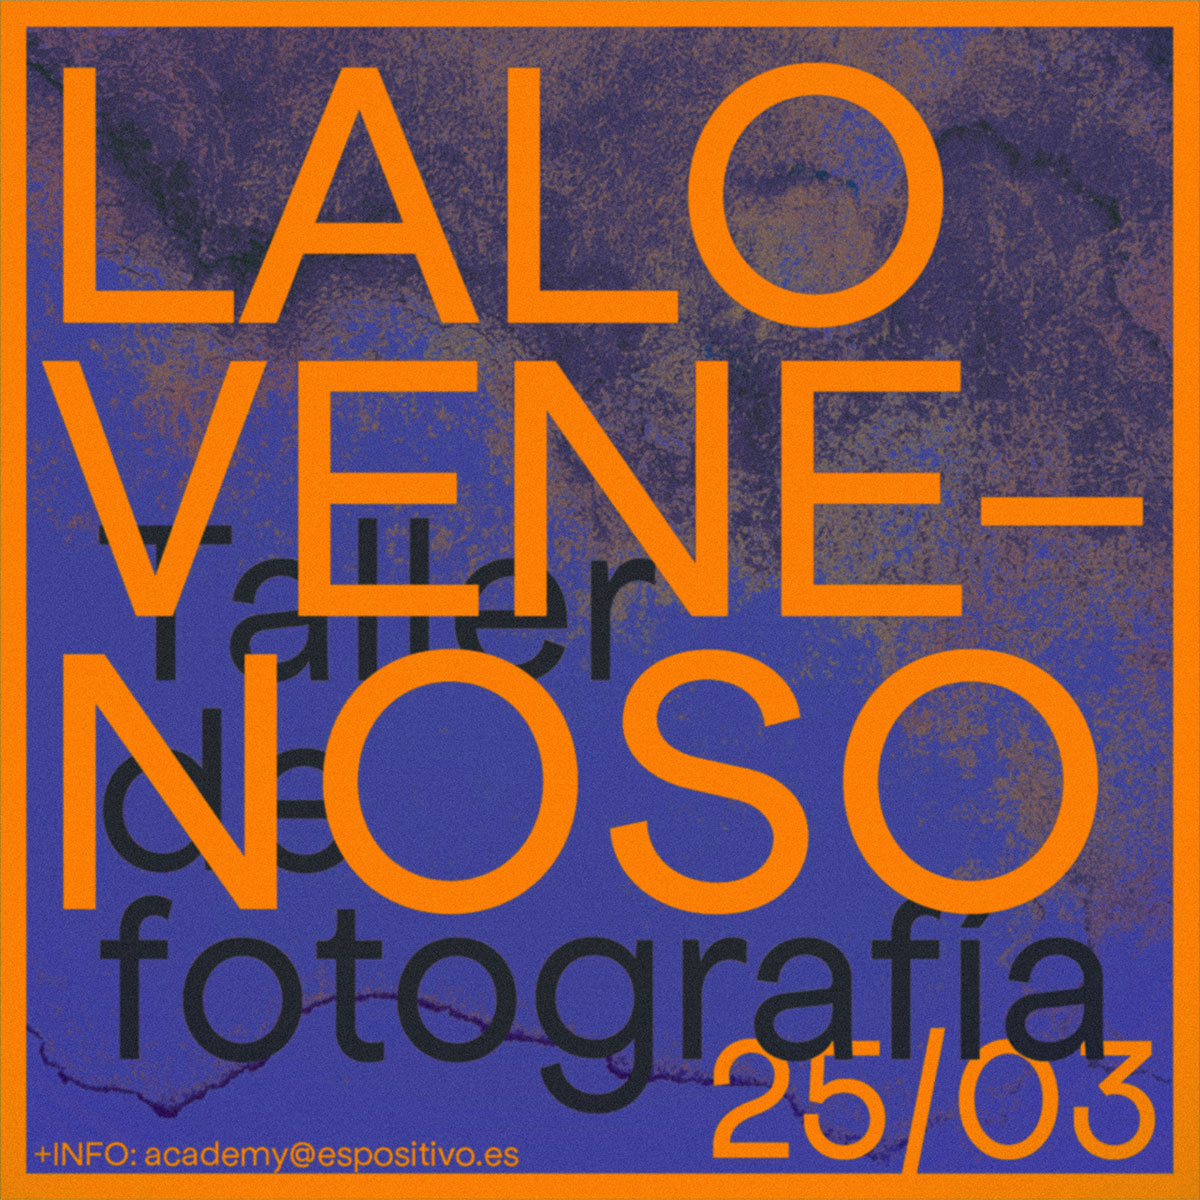 MARZO 2023 - Taller de fotografía con Lalovenenoso<br>Sábado 25 de Marzo 16h-21h